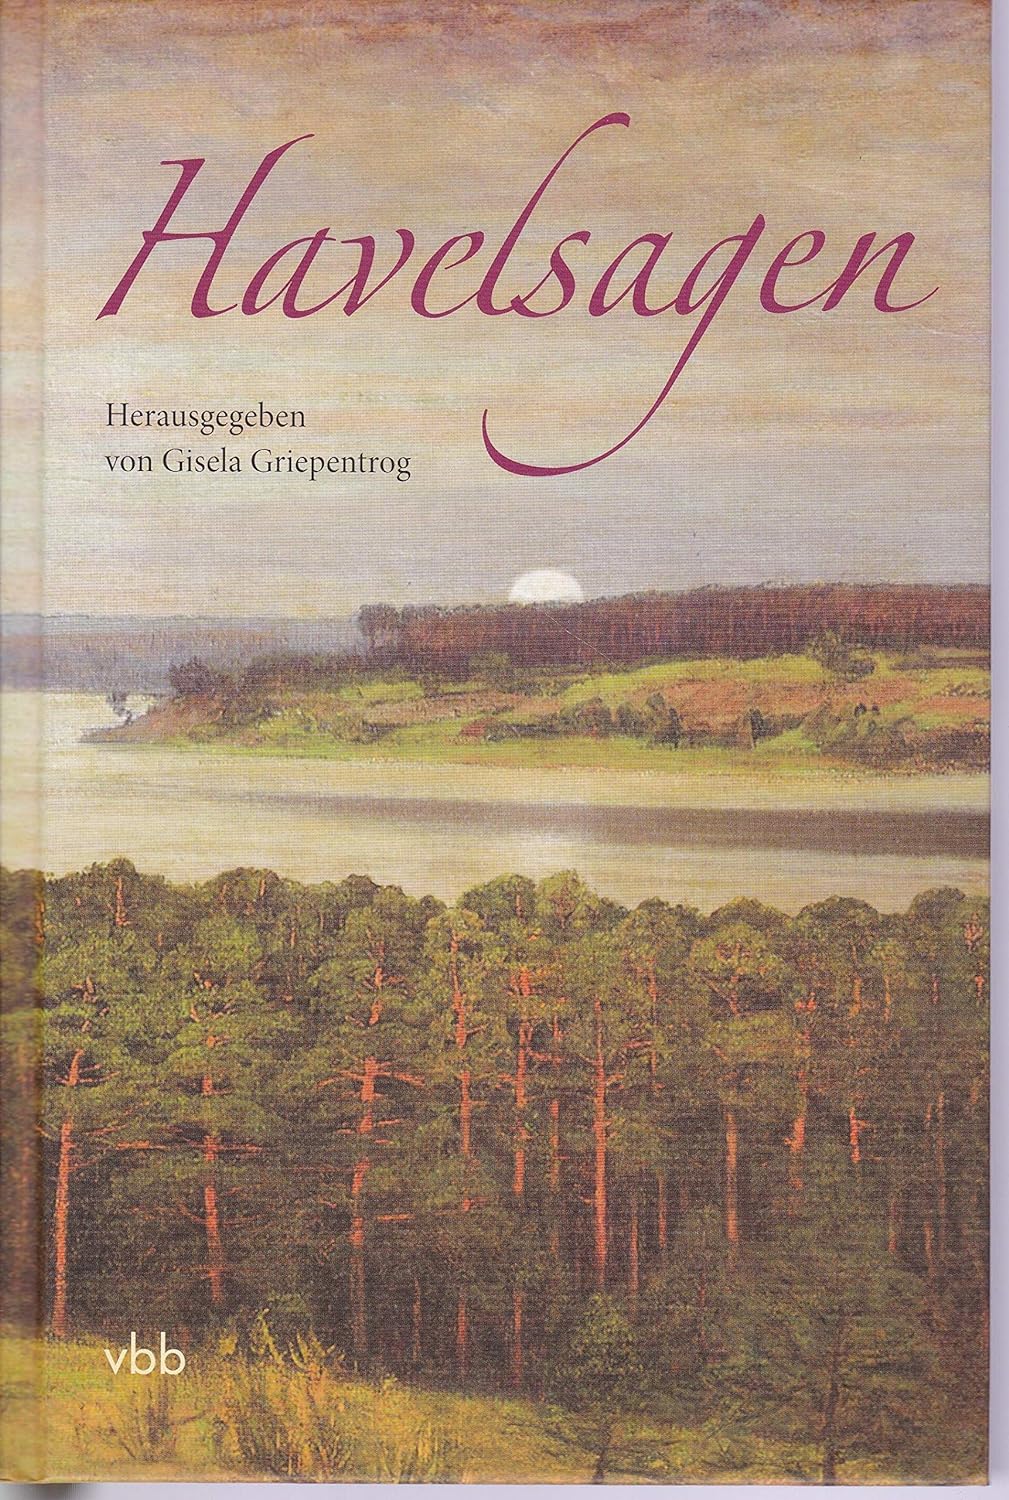 Gisela Griepentrog: Havelsagen (German language, 2009, Verlag für Berlin-Brandenburg)